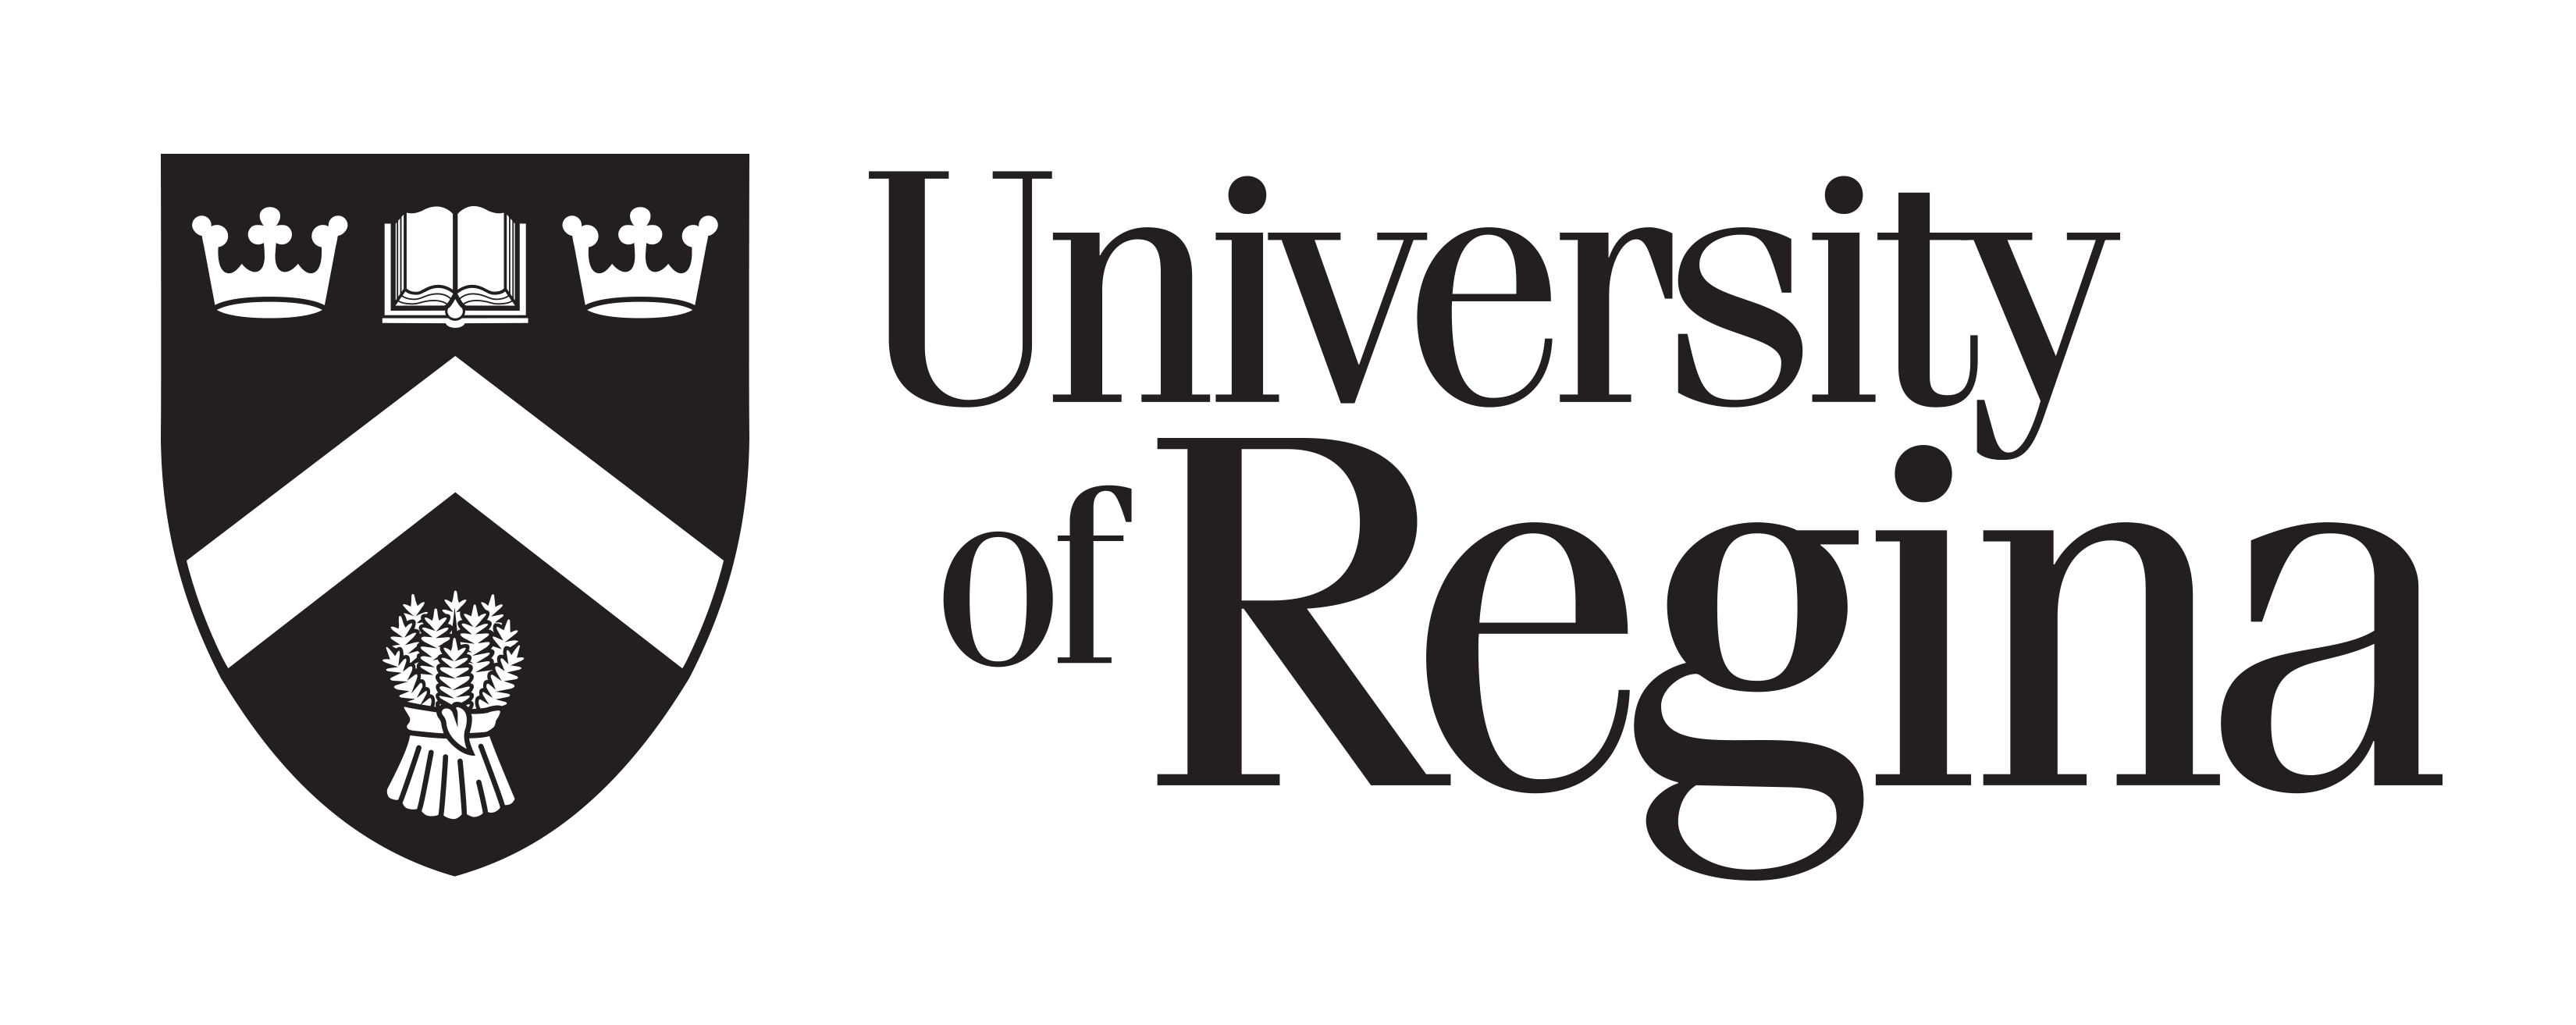 University Logo - Primary Logo. Communications and Marketing, University of Regina